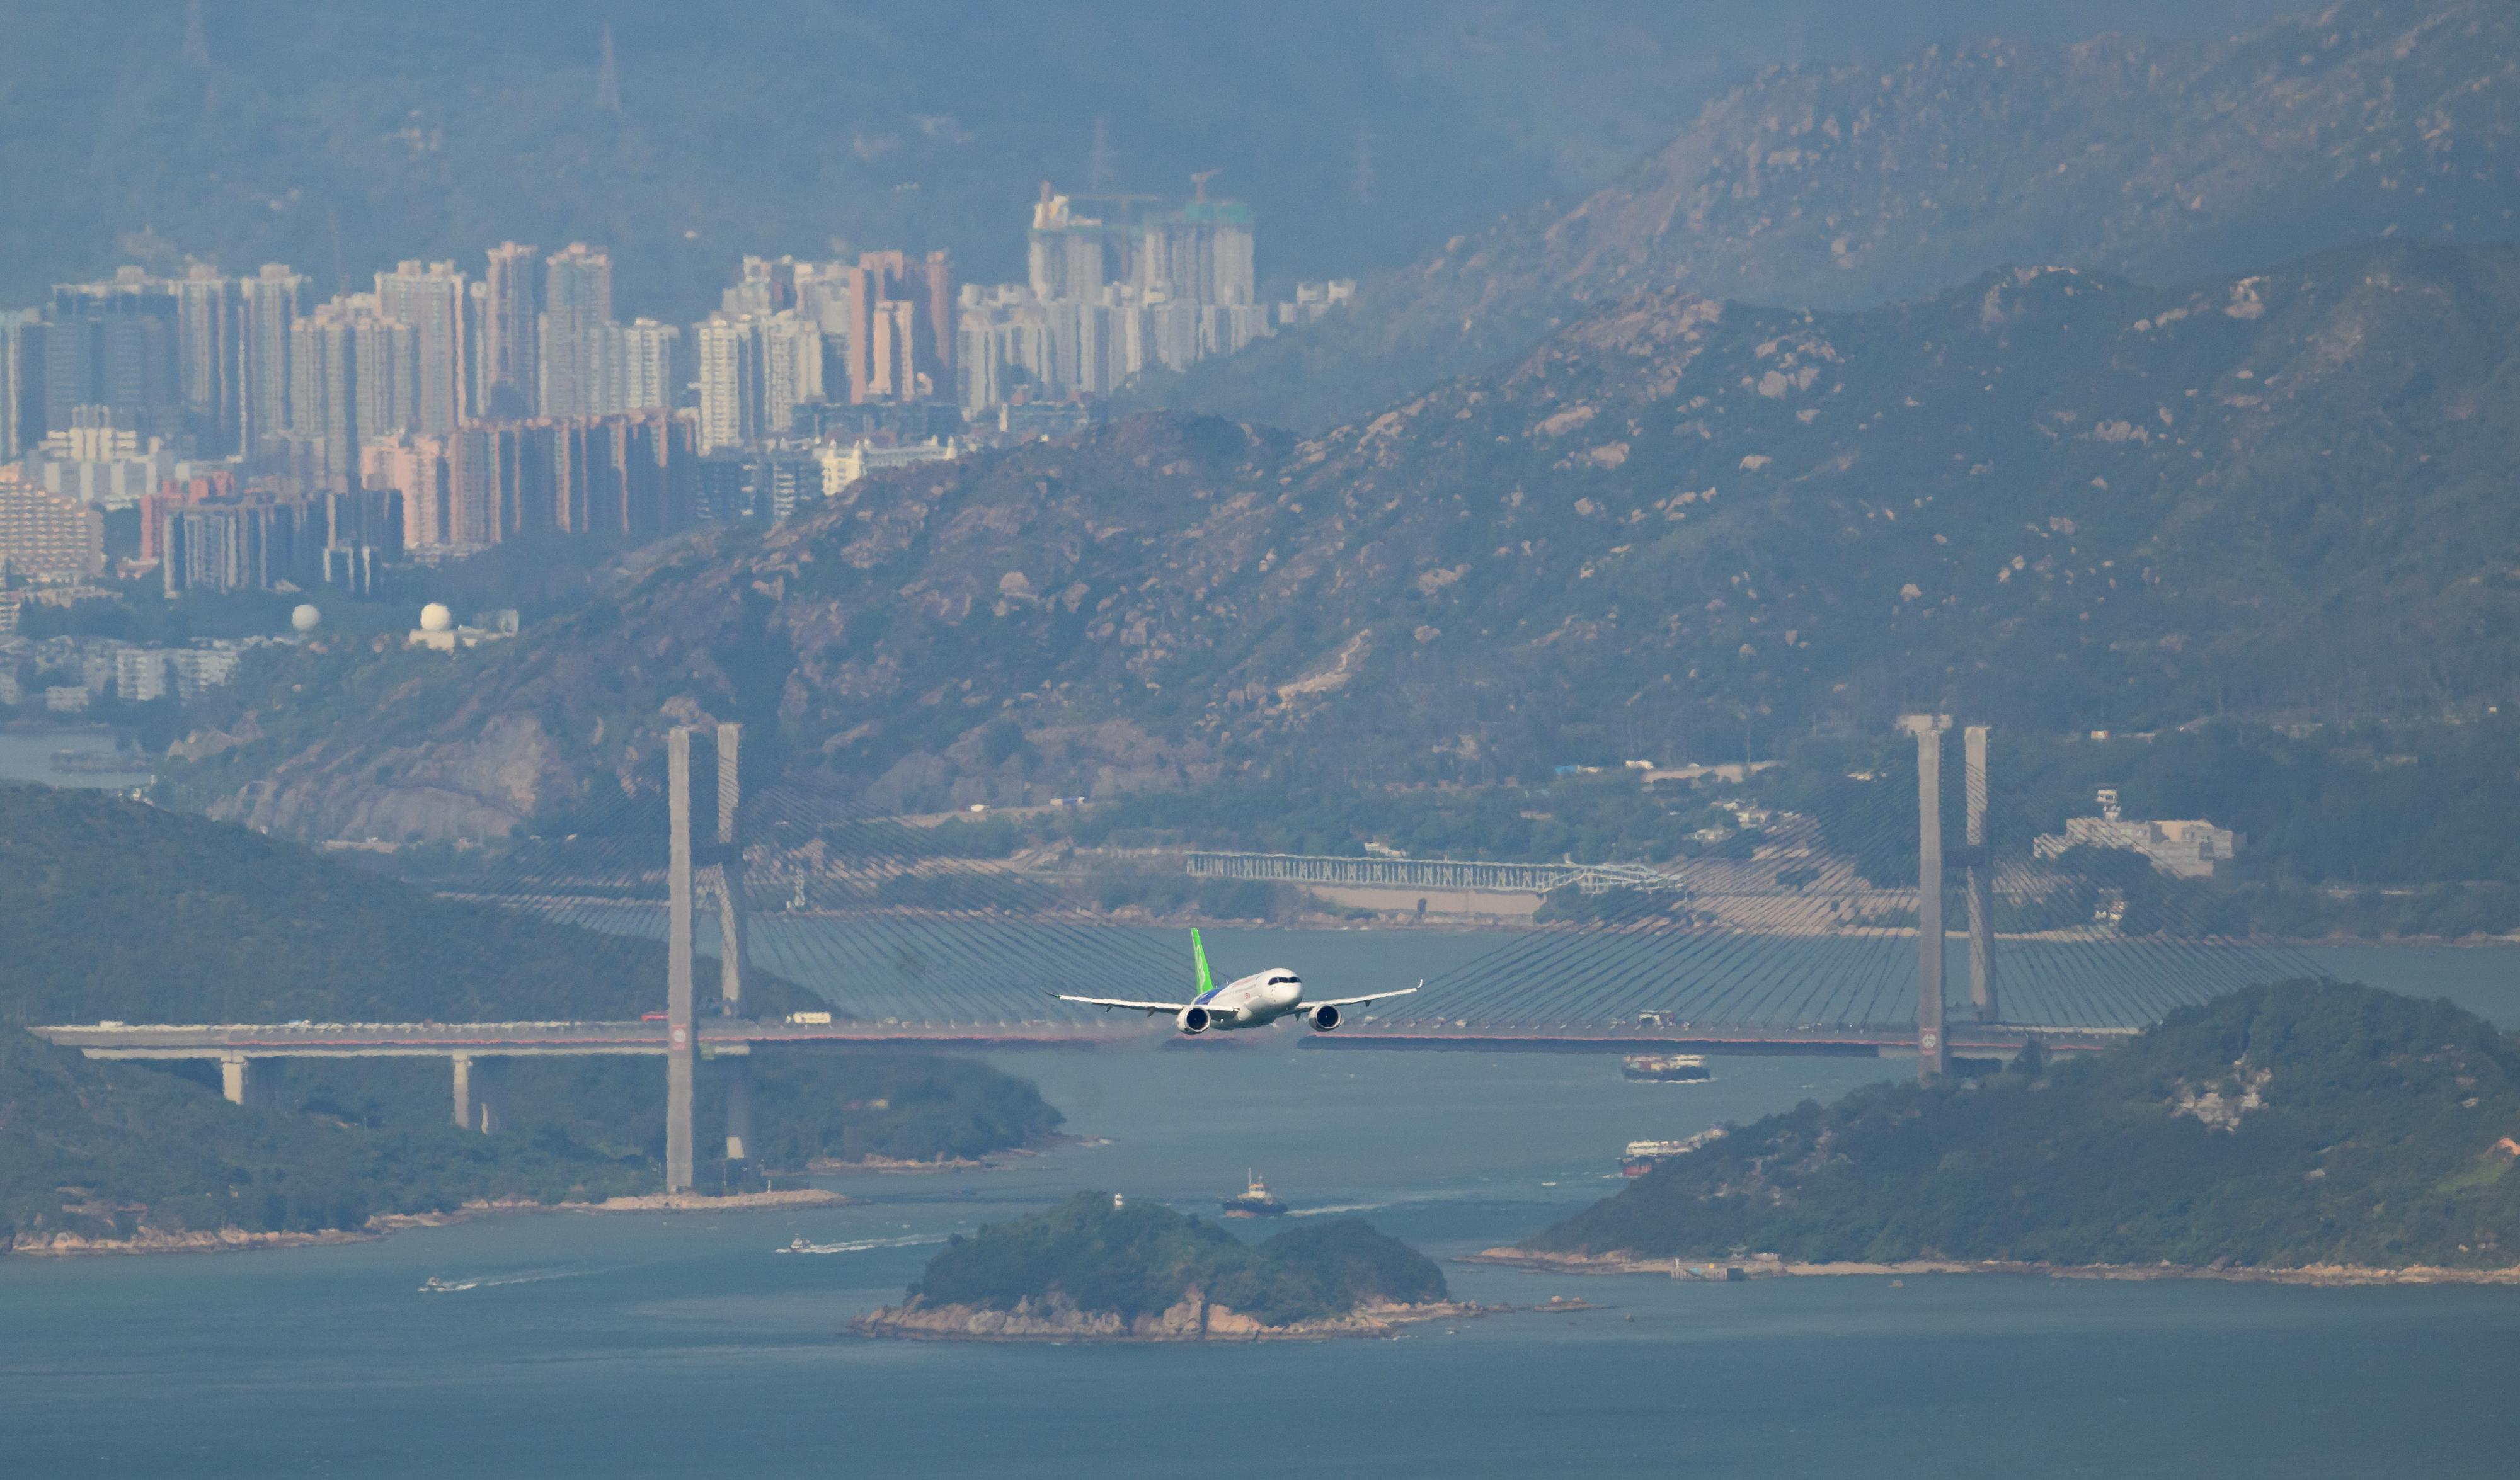 國家自主研製的C919飛機今日（十二月十六日）上午順利完成飛行演示。圖示C919飛機正由香港國際機場飛往維多利亞港進行飛行展示。

